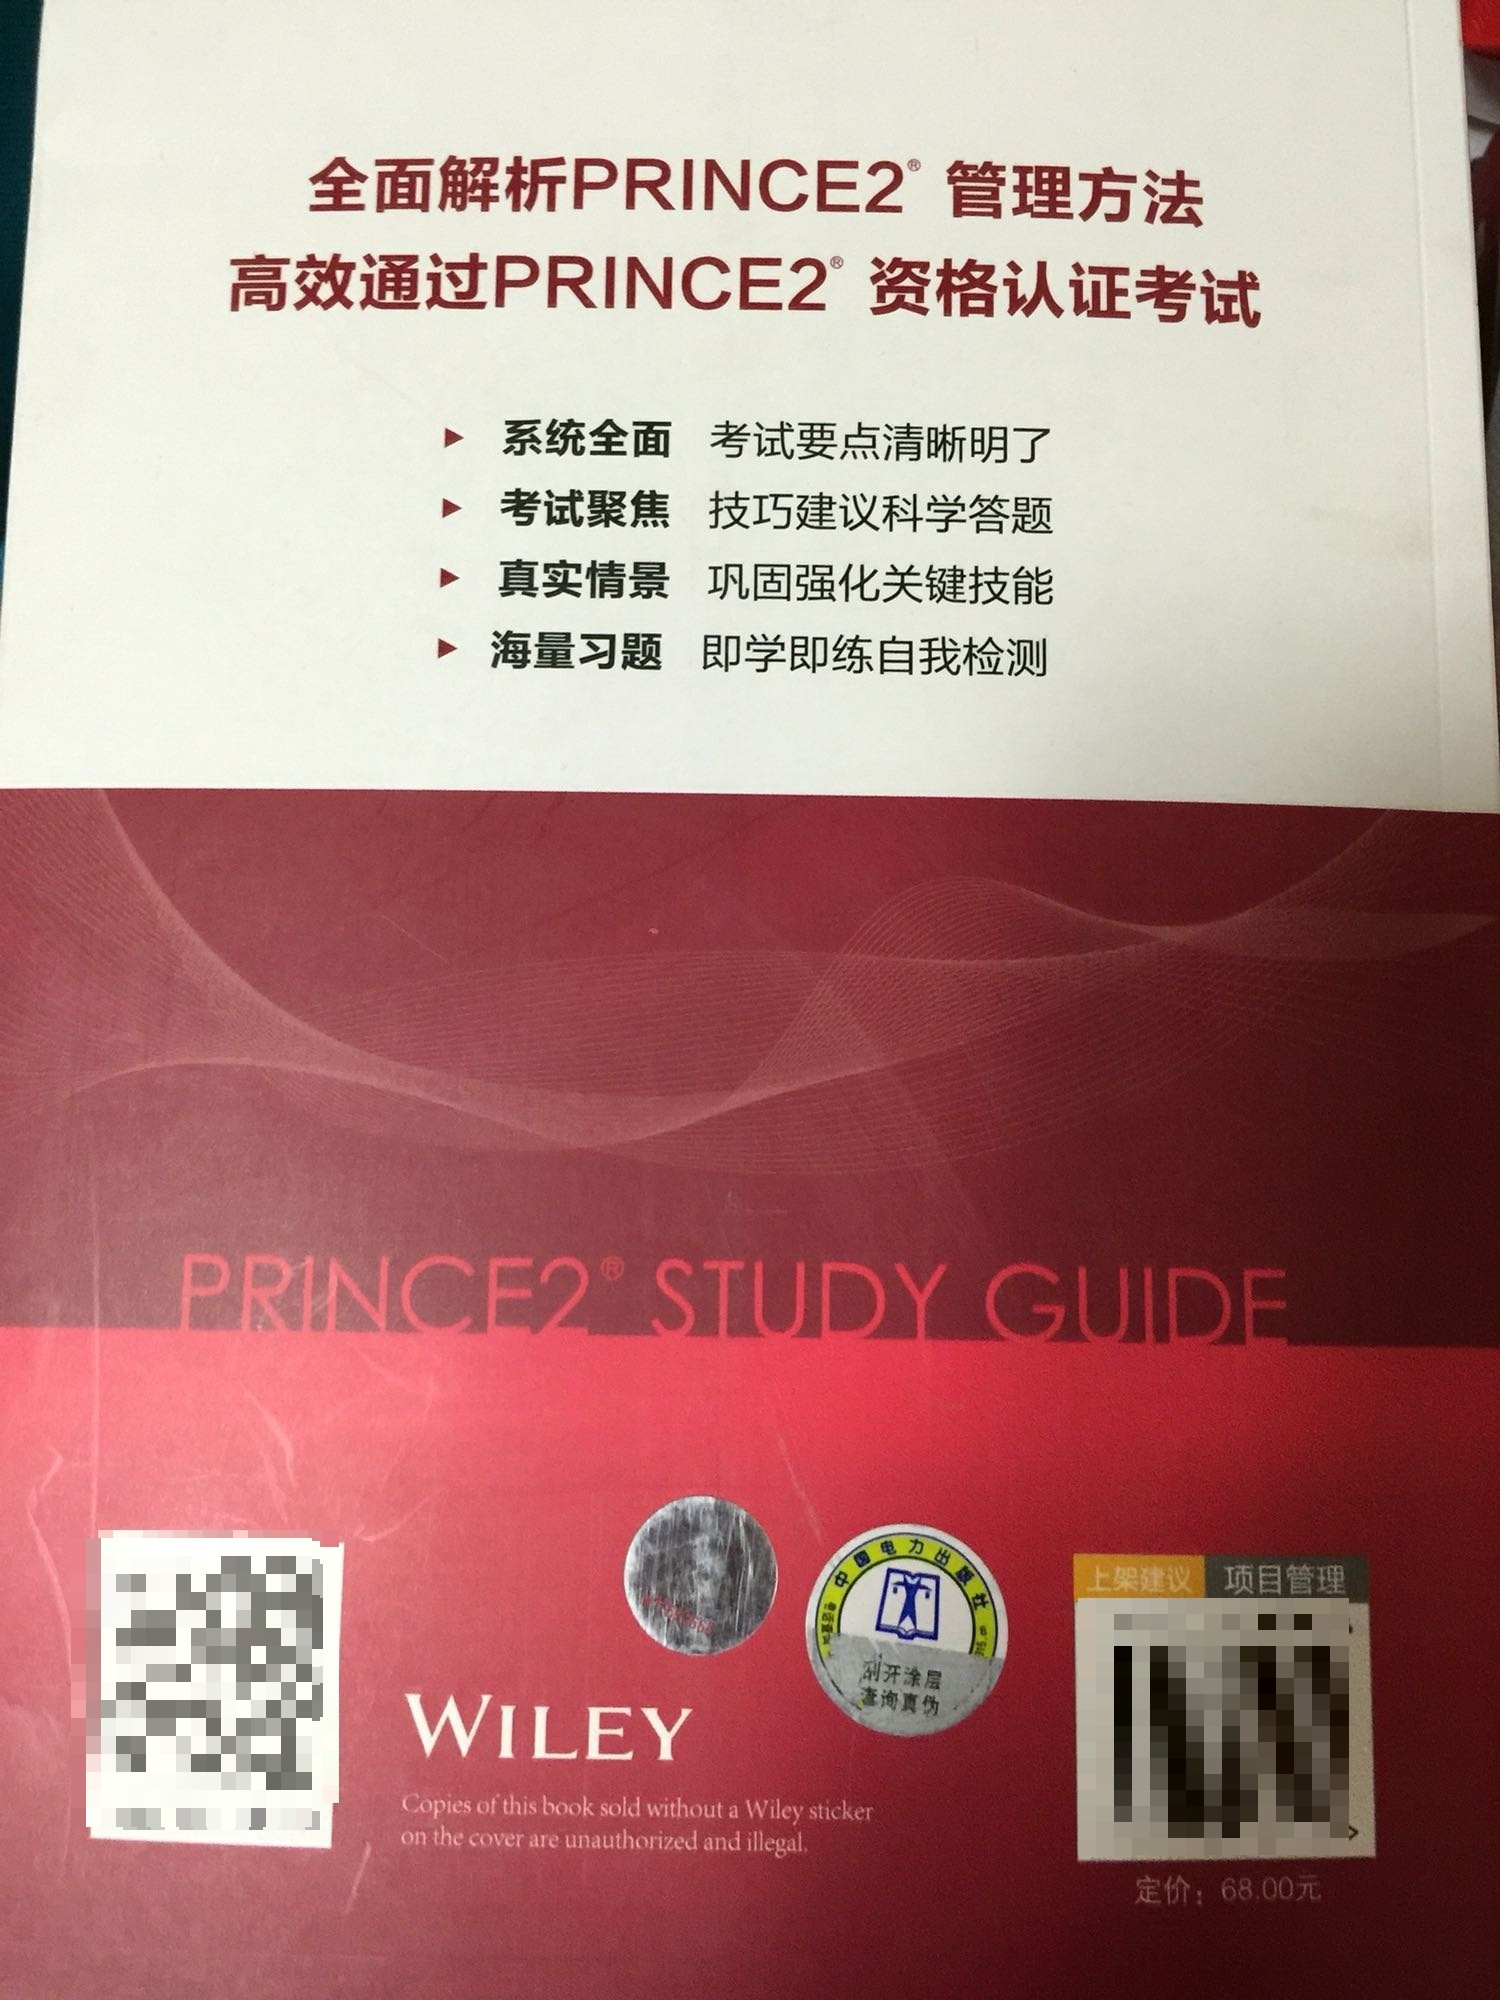 　　《PRINCE2学习指南》用实际案例将PRINCE2项目管理体系实施过程的7原则、7主题和7流程串联起来，以更易于理解的方式解读了《PRINCE2成功的项目管理（2009年）》的核心内容，提供了运用PRINCE2进行项目管理必需的工具和技术示例，并有针对性地为备考不同级别PRINCE2考试的考生提供了考点讲解、答题技巧和模拟试题，帮助考生夯实基础，自我检测。